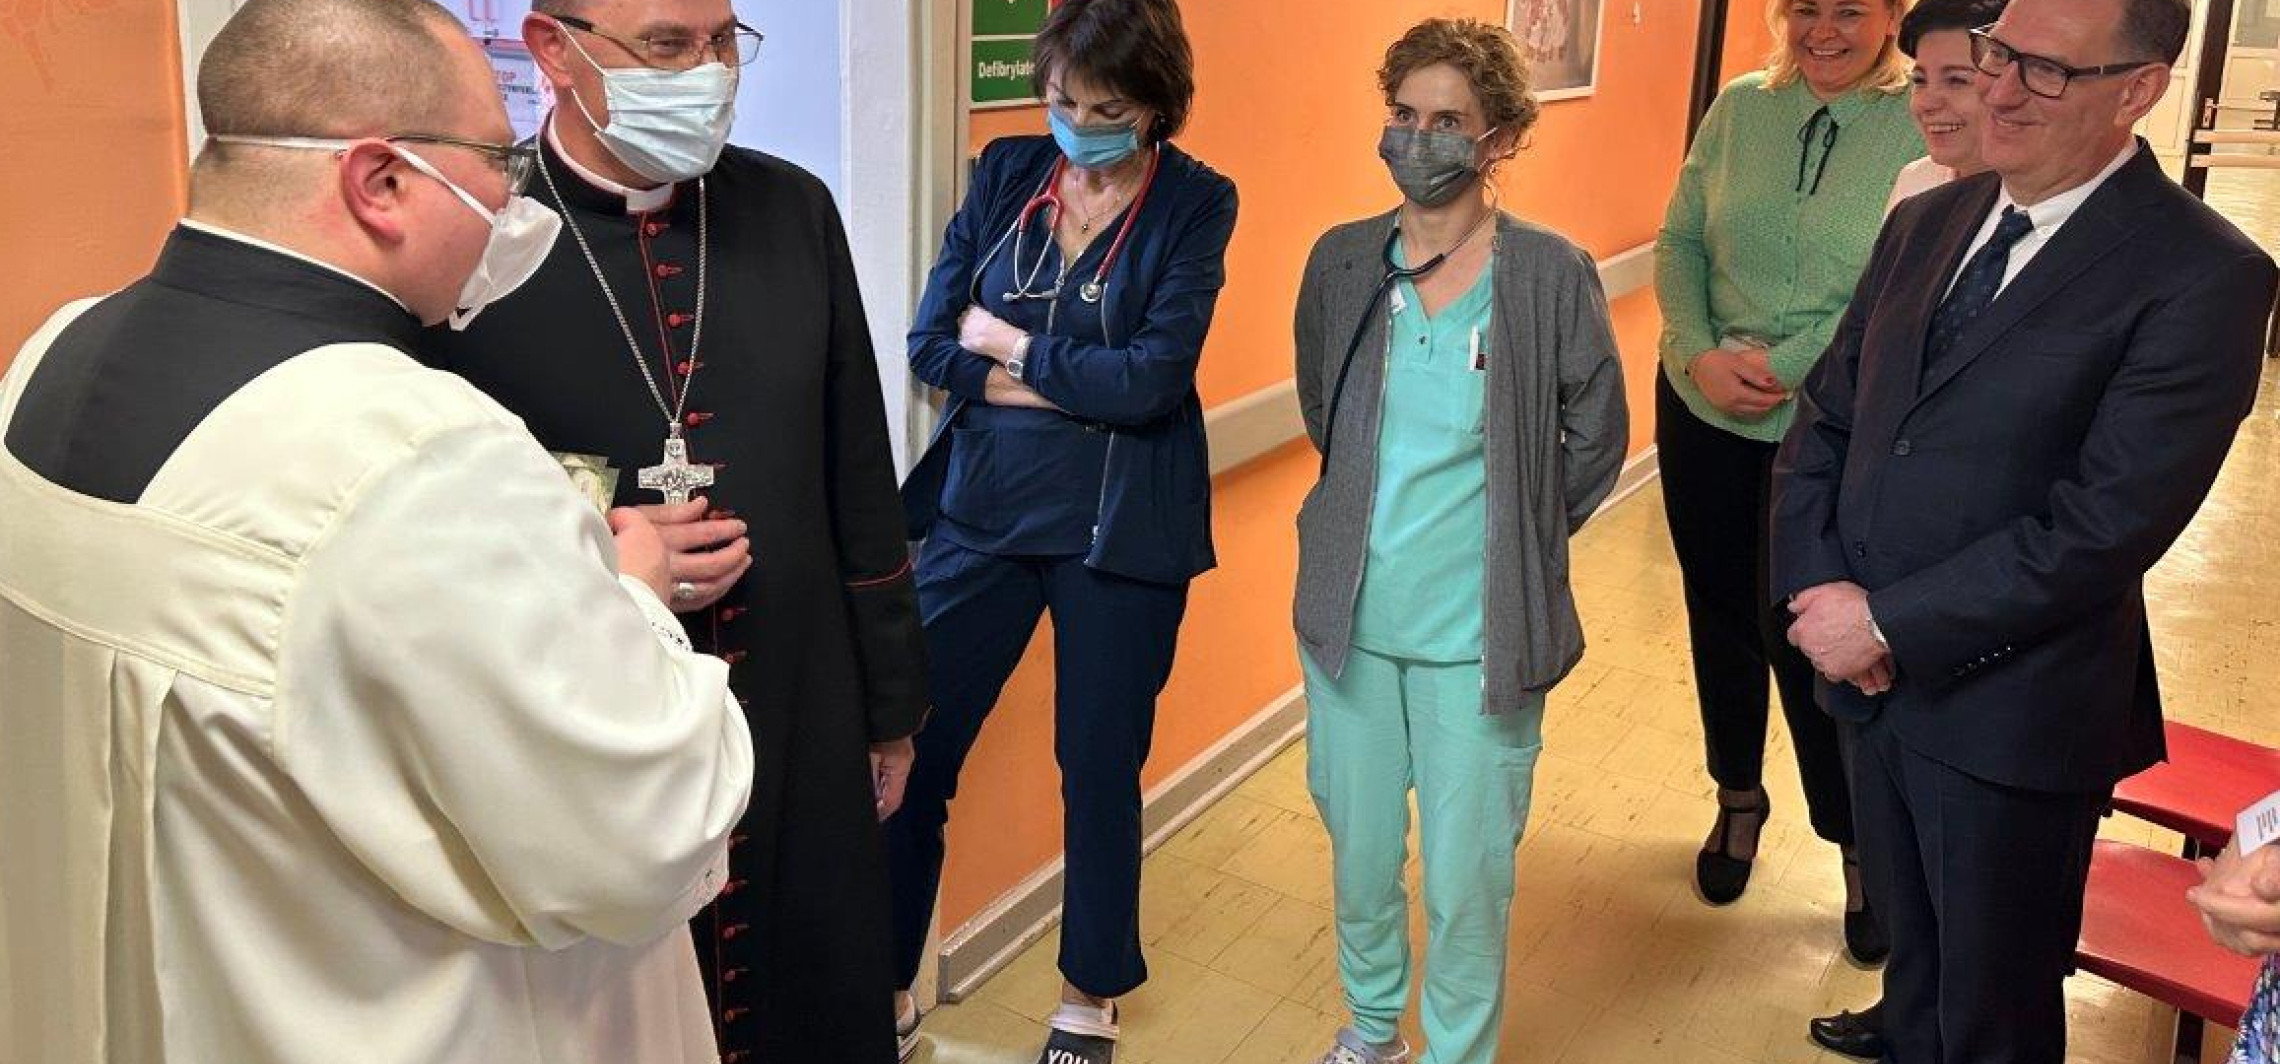 Inowrocław - Światowy Dzień Chorego. Prymas odwiedził pacjentów inowrocławskiego szpitala